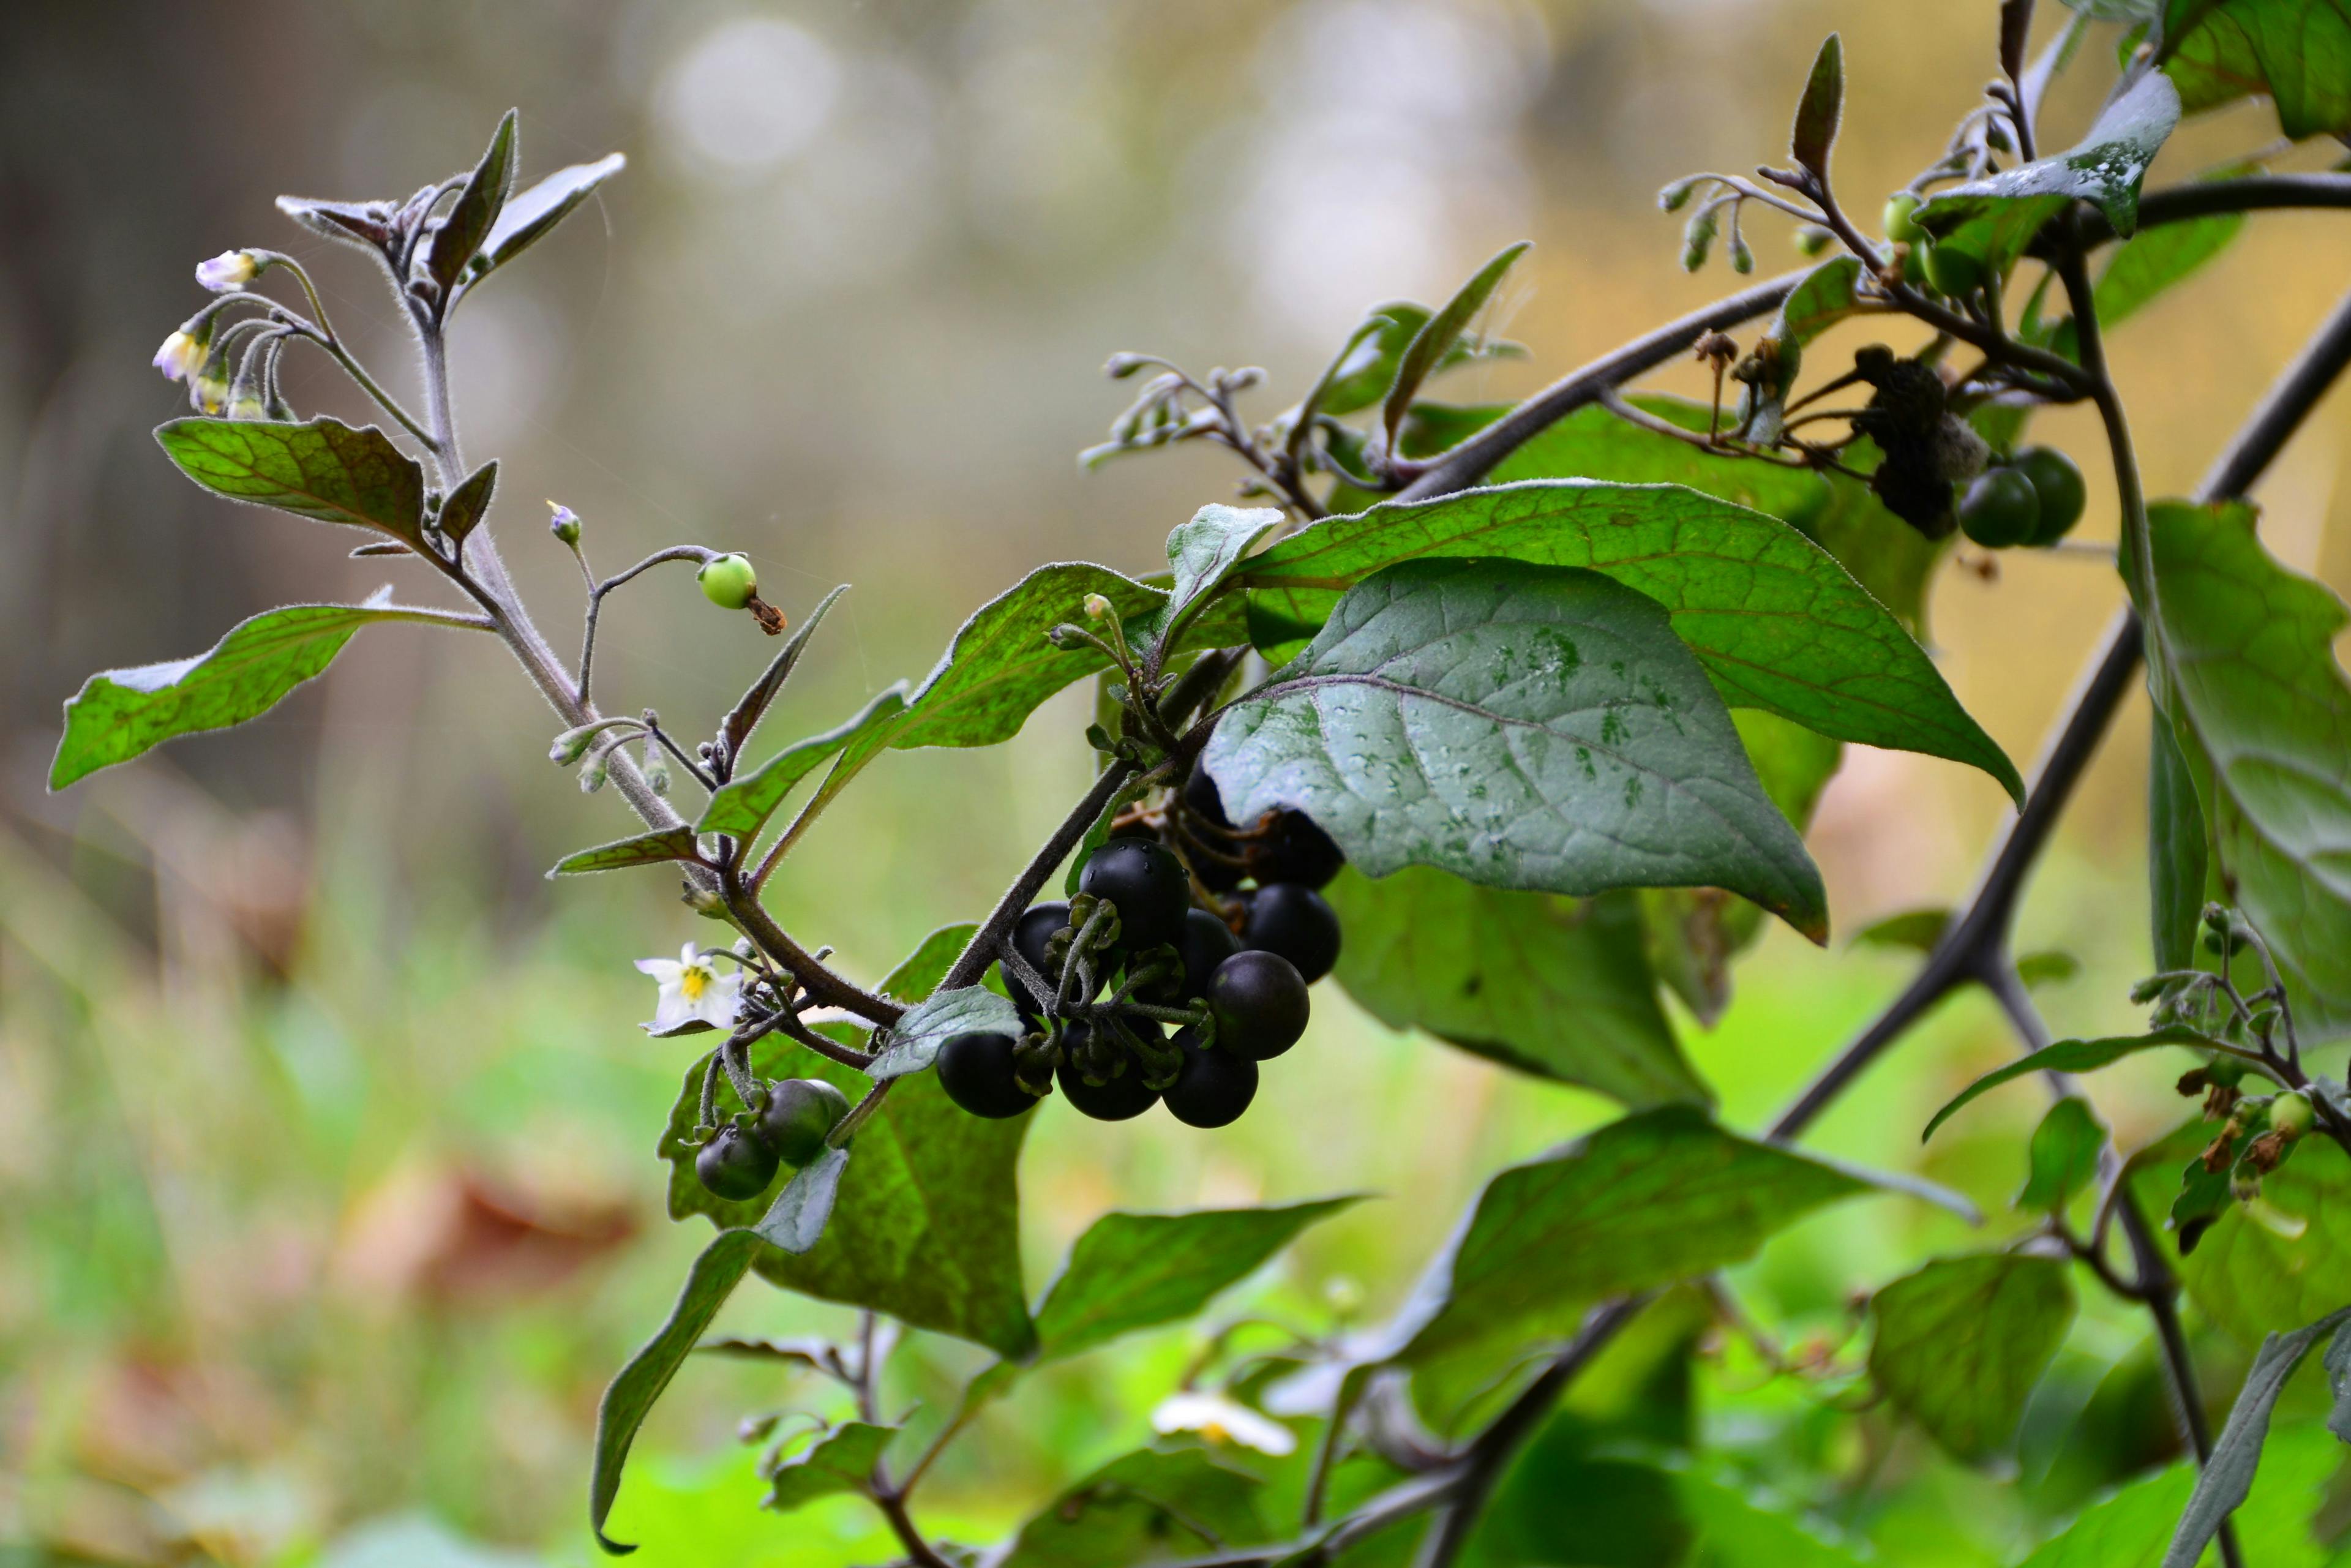 The nightshade (Solanum nigrum) continues to bloom until late autumn. | Image Credit: © Optimist - stock.adobe.com